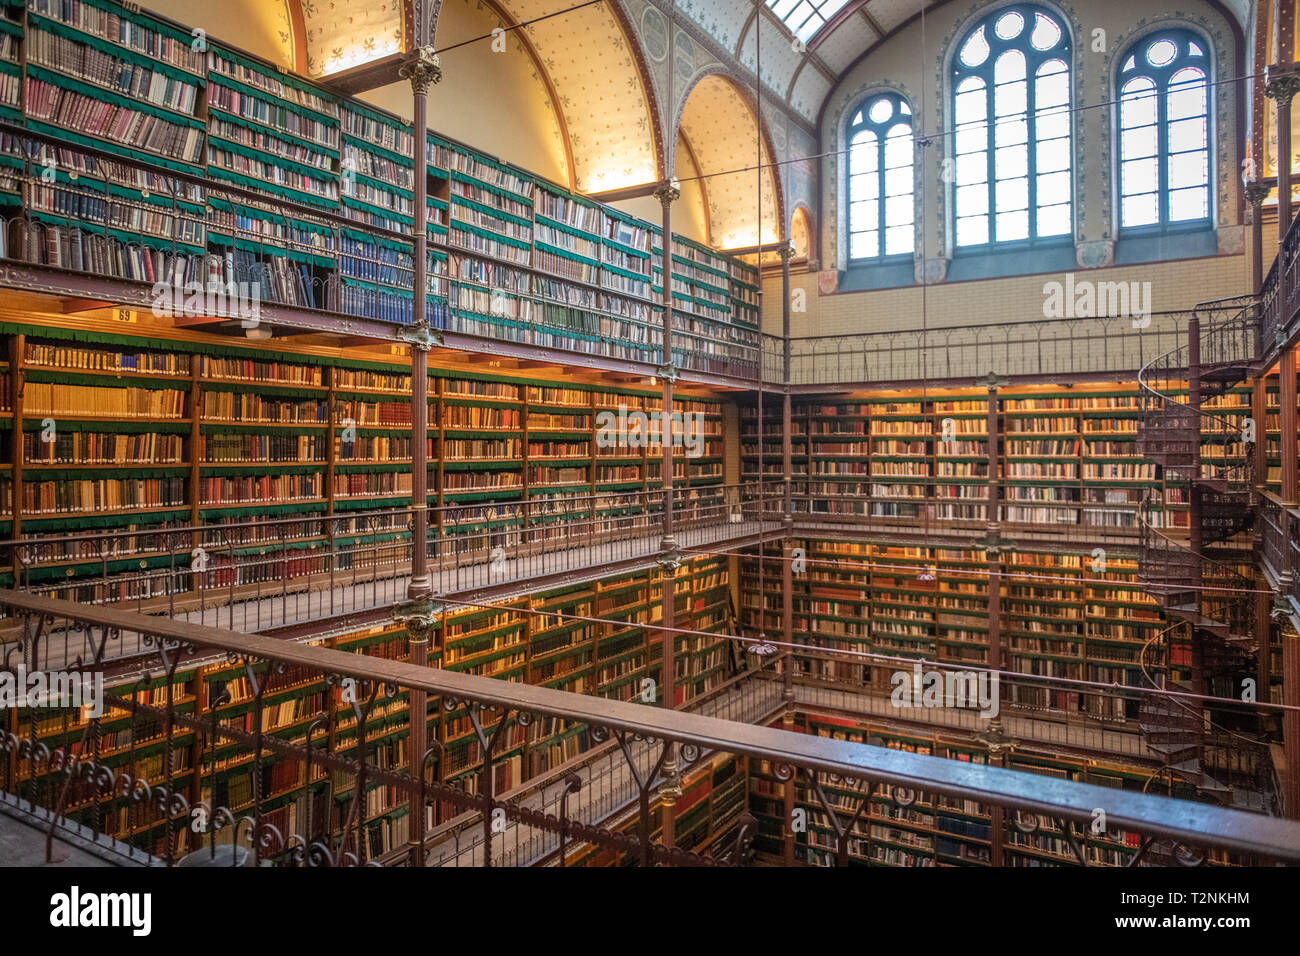 Bücher sind gestapelt hoch in das Rijksmuseum Forschung Bibliothek die größte öffentliche Kunst Geschichte Forschung Bibliothek in den Niederlanden. Amsterdam, Niederlande Stockfoto